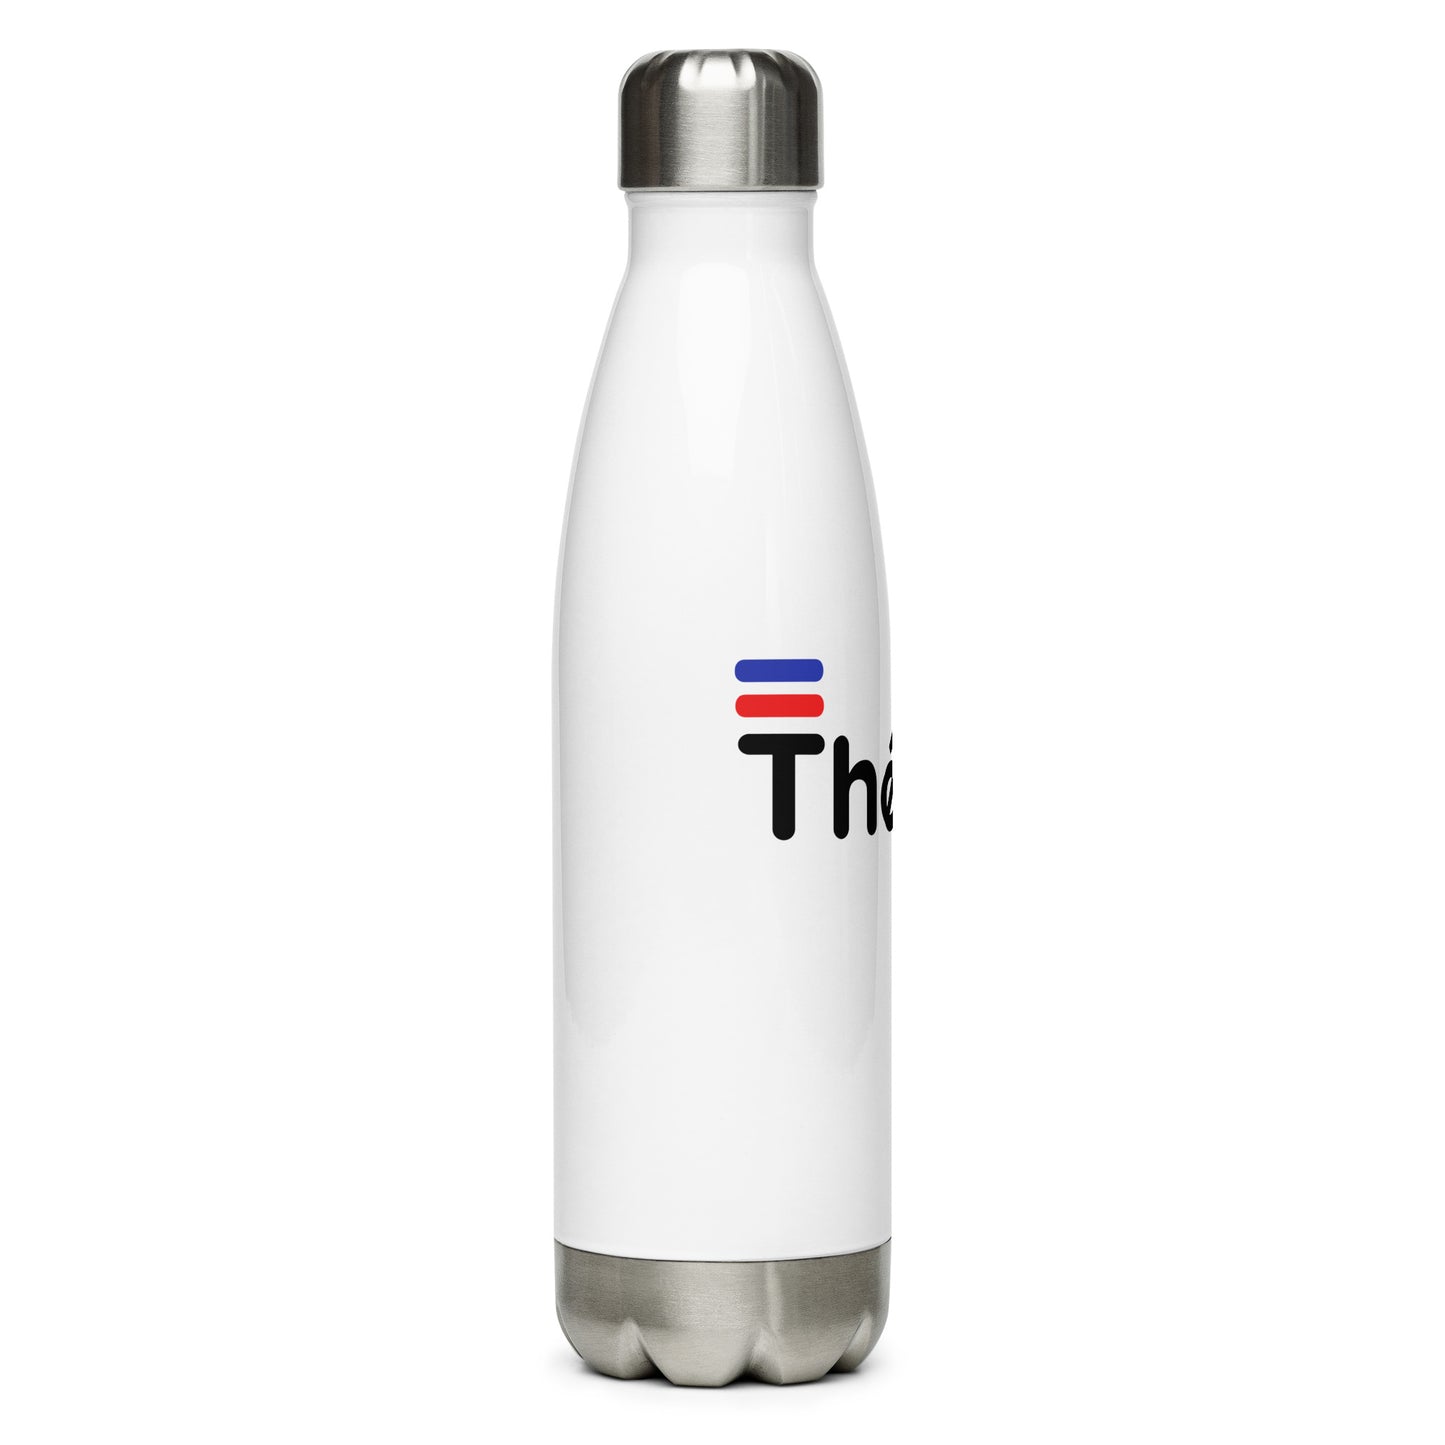 Théard steel water bottle